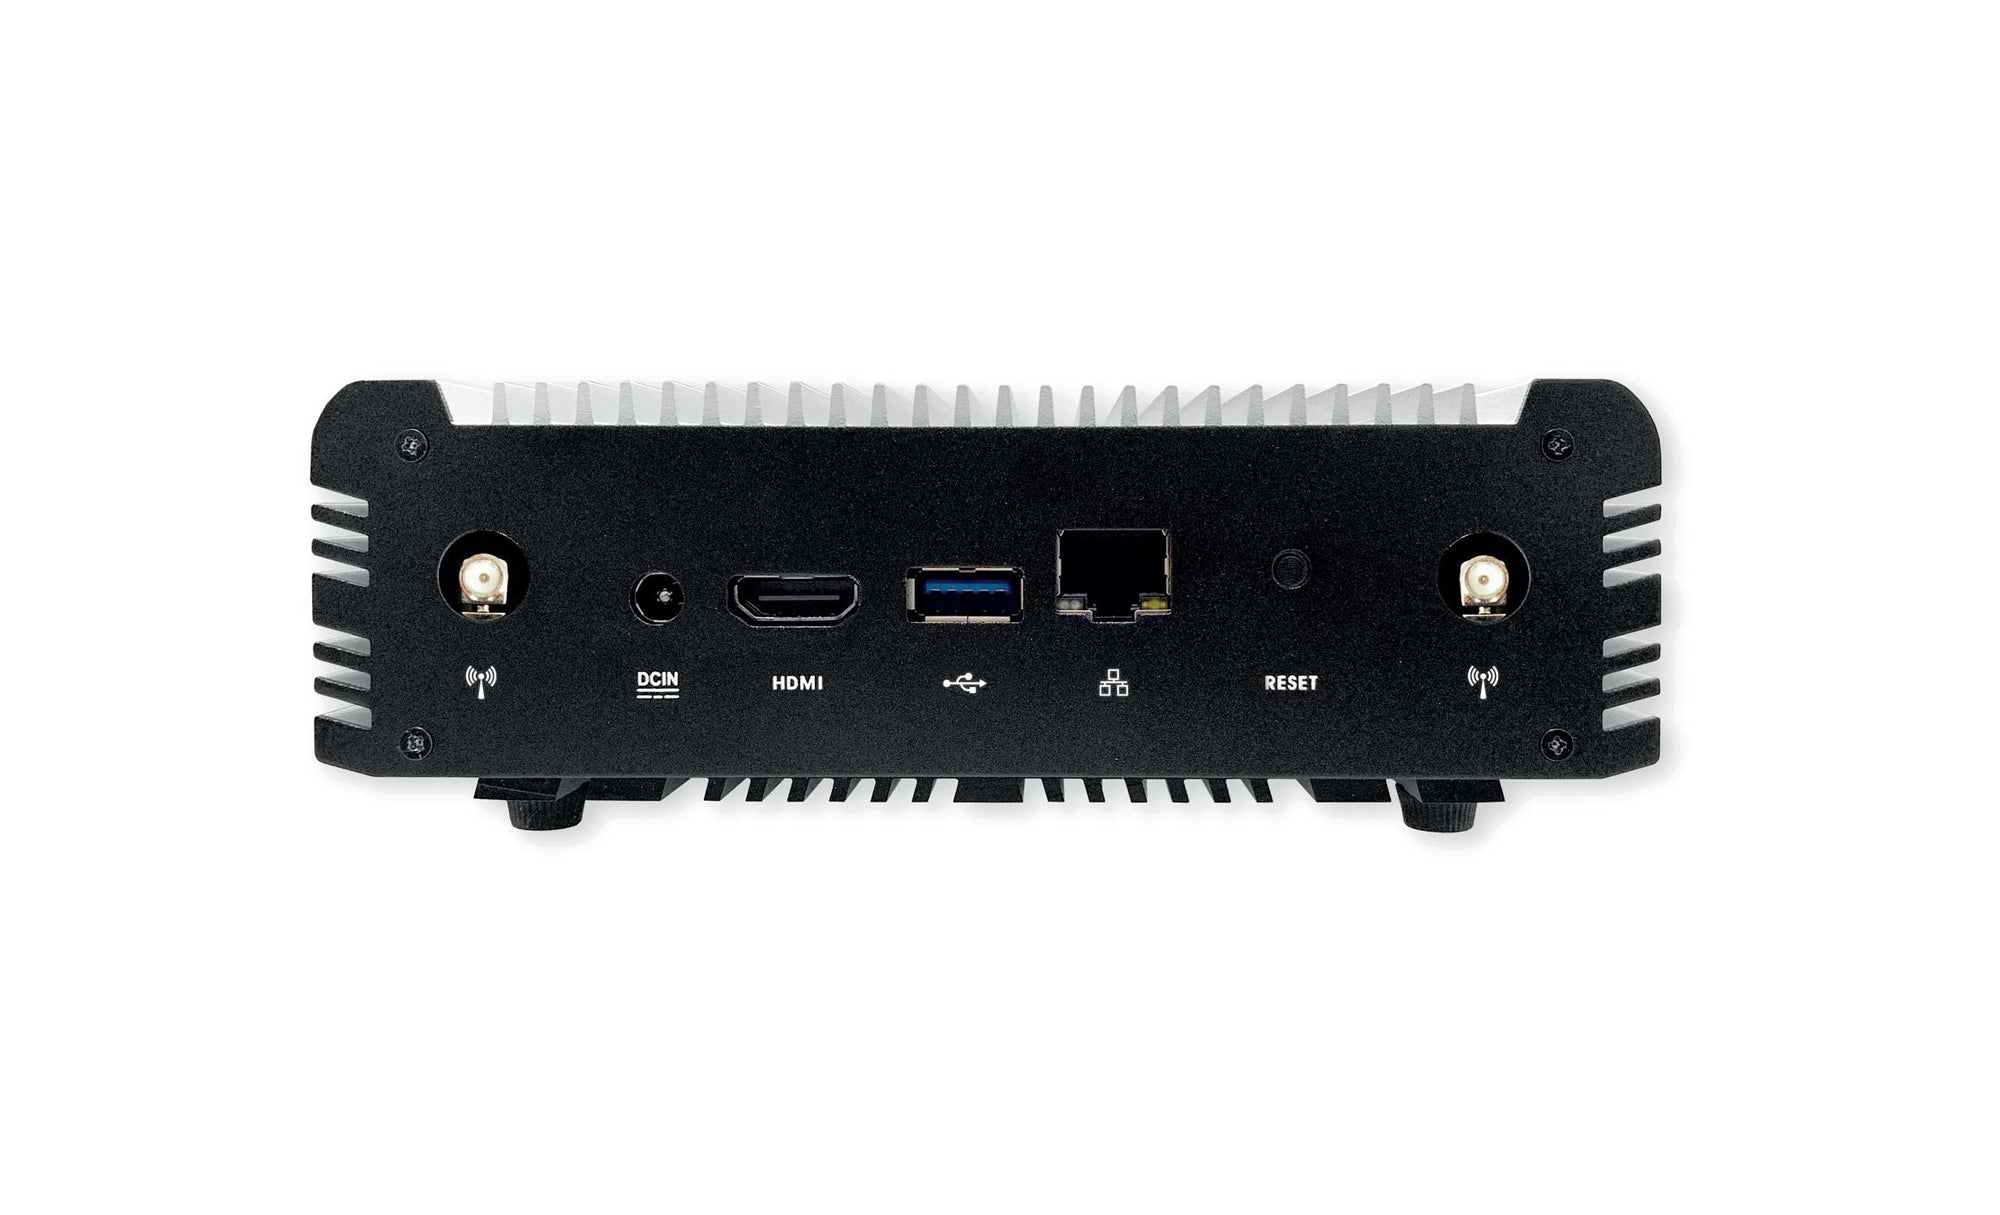 Modena Hub+ Sistema de colaboración Inalámbrico permite conectarse de forma inalámbrica de Audio, Video y USB para 1 Sala de juntas, conexión WI-FI